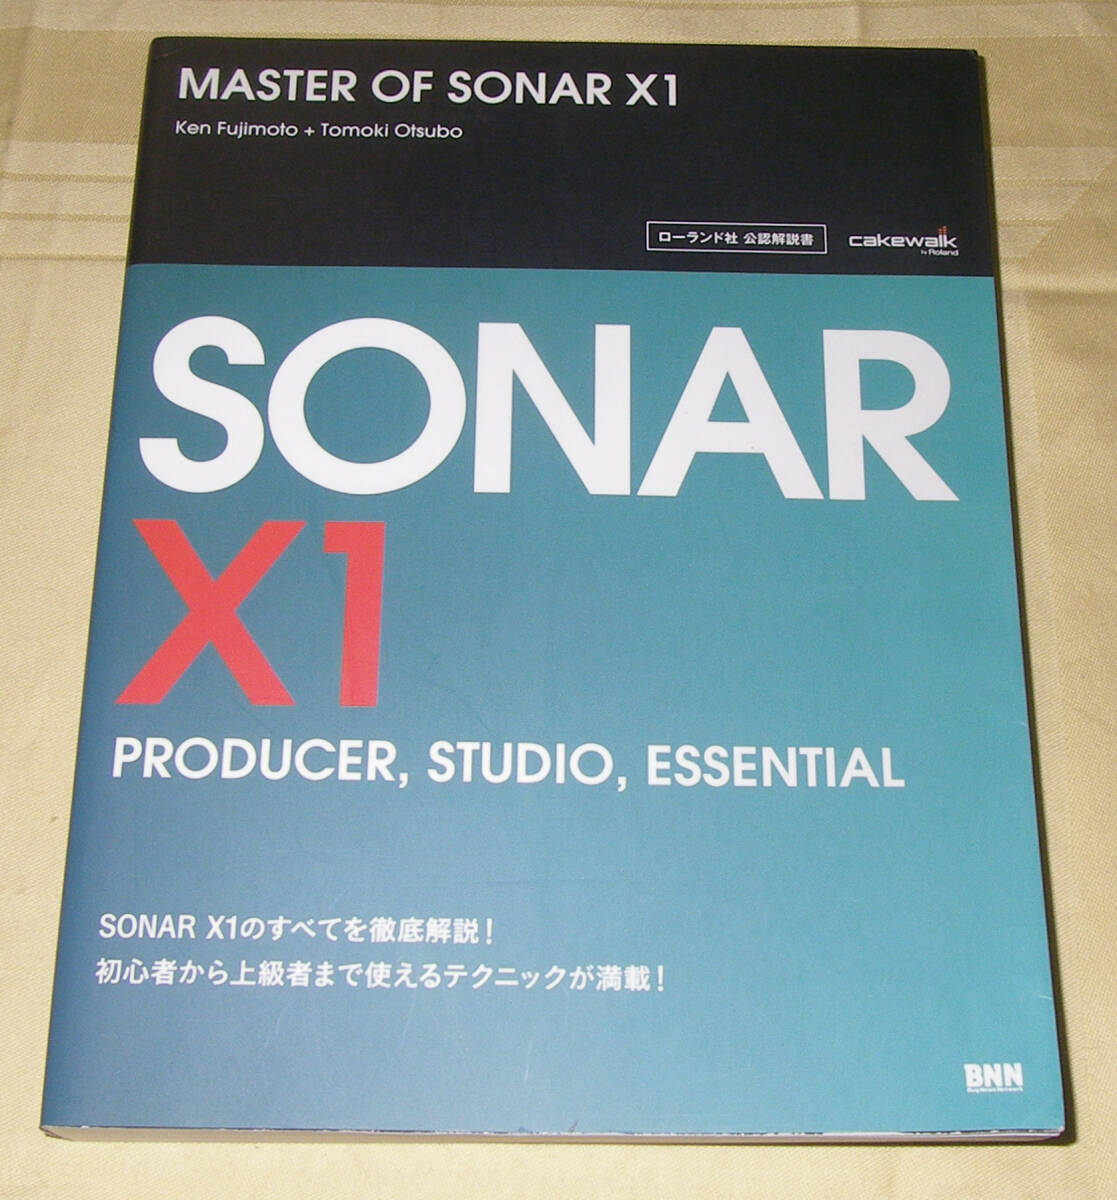 *Roland CAKEWALK MASTER OF SONAR X1*